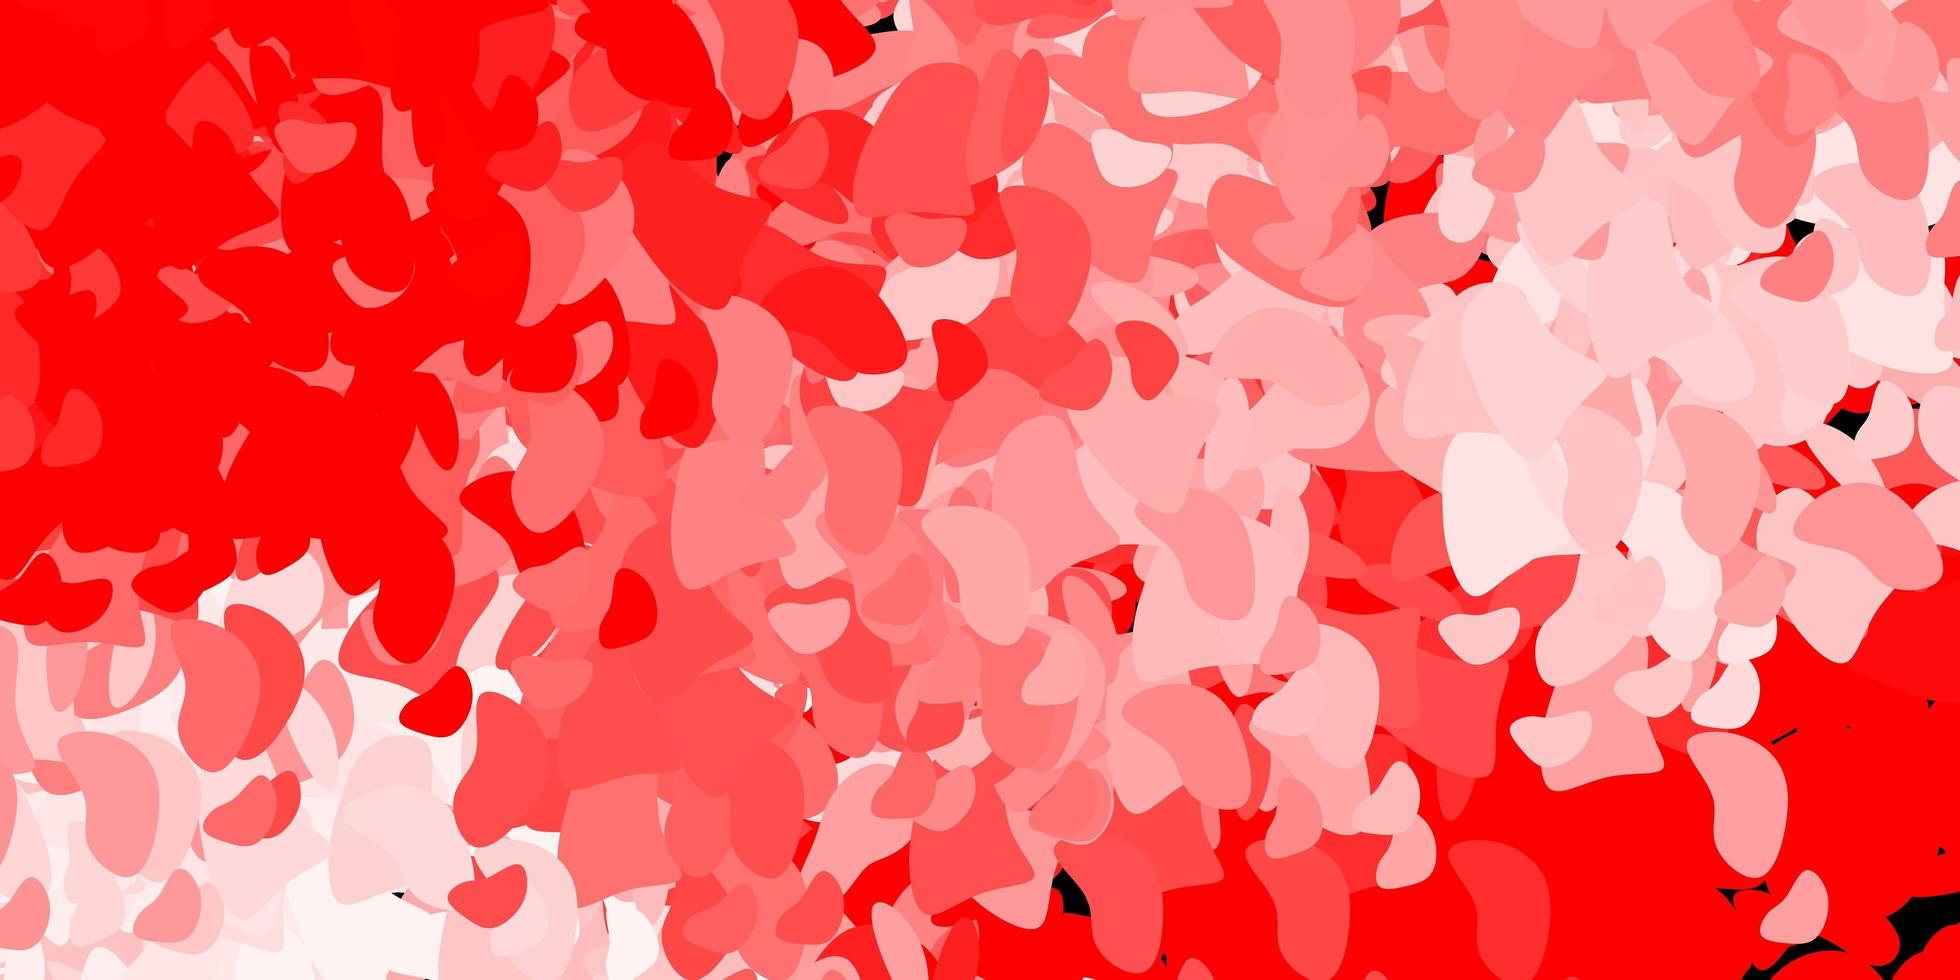 röd bakgrund med kaotiska former. vektor